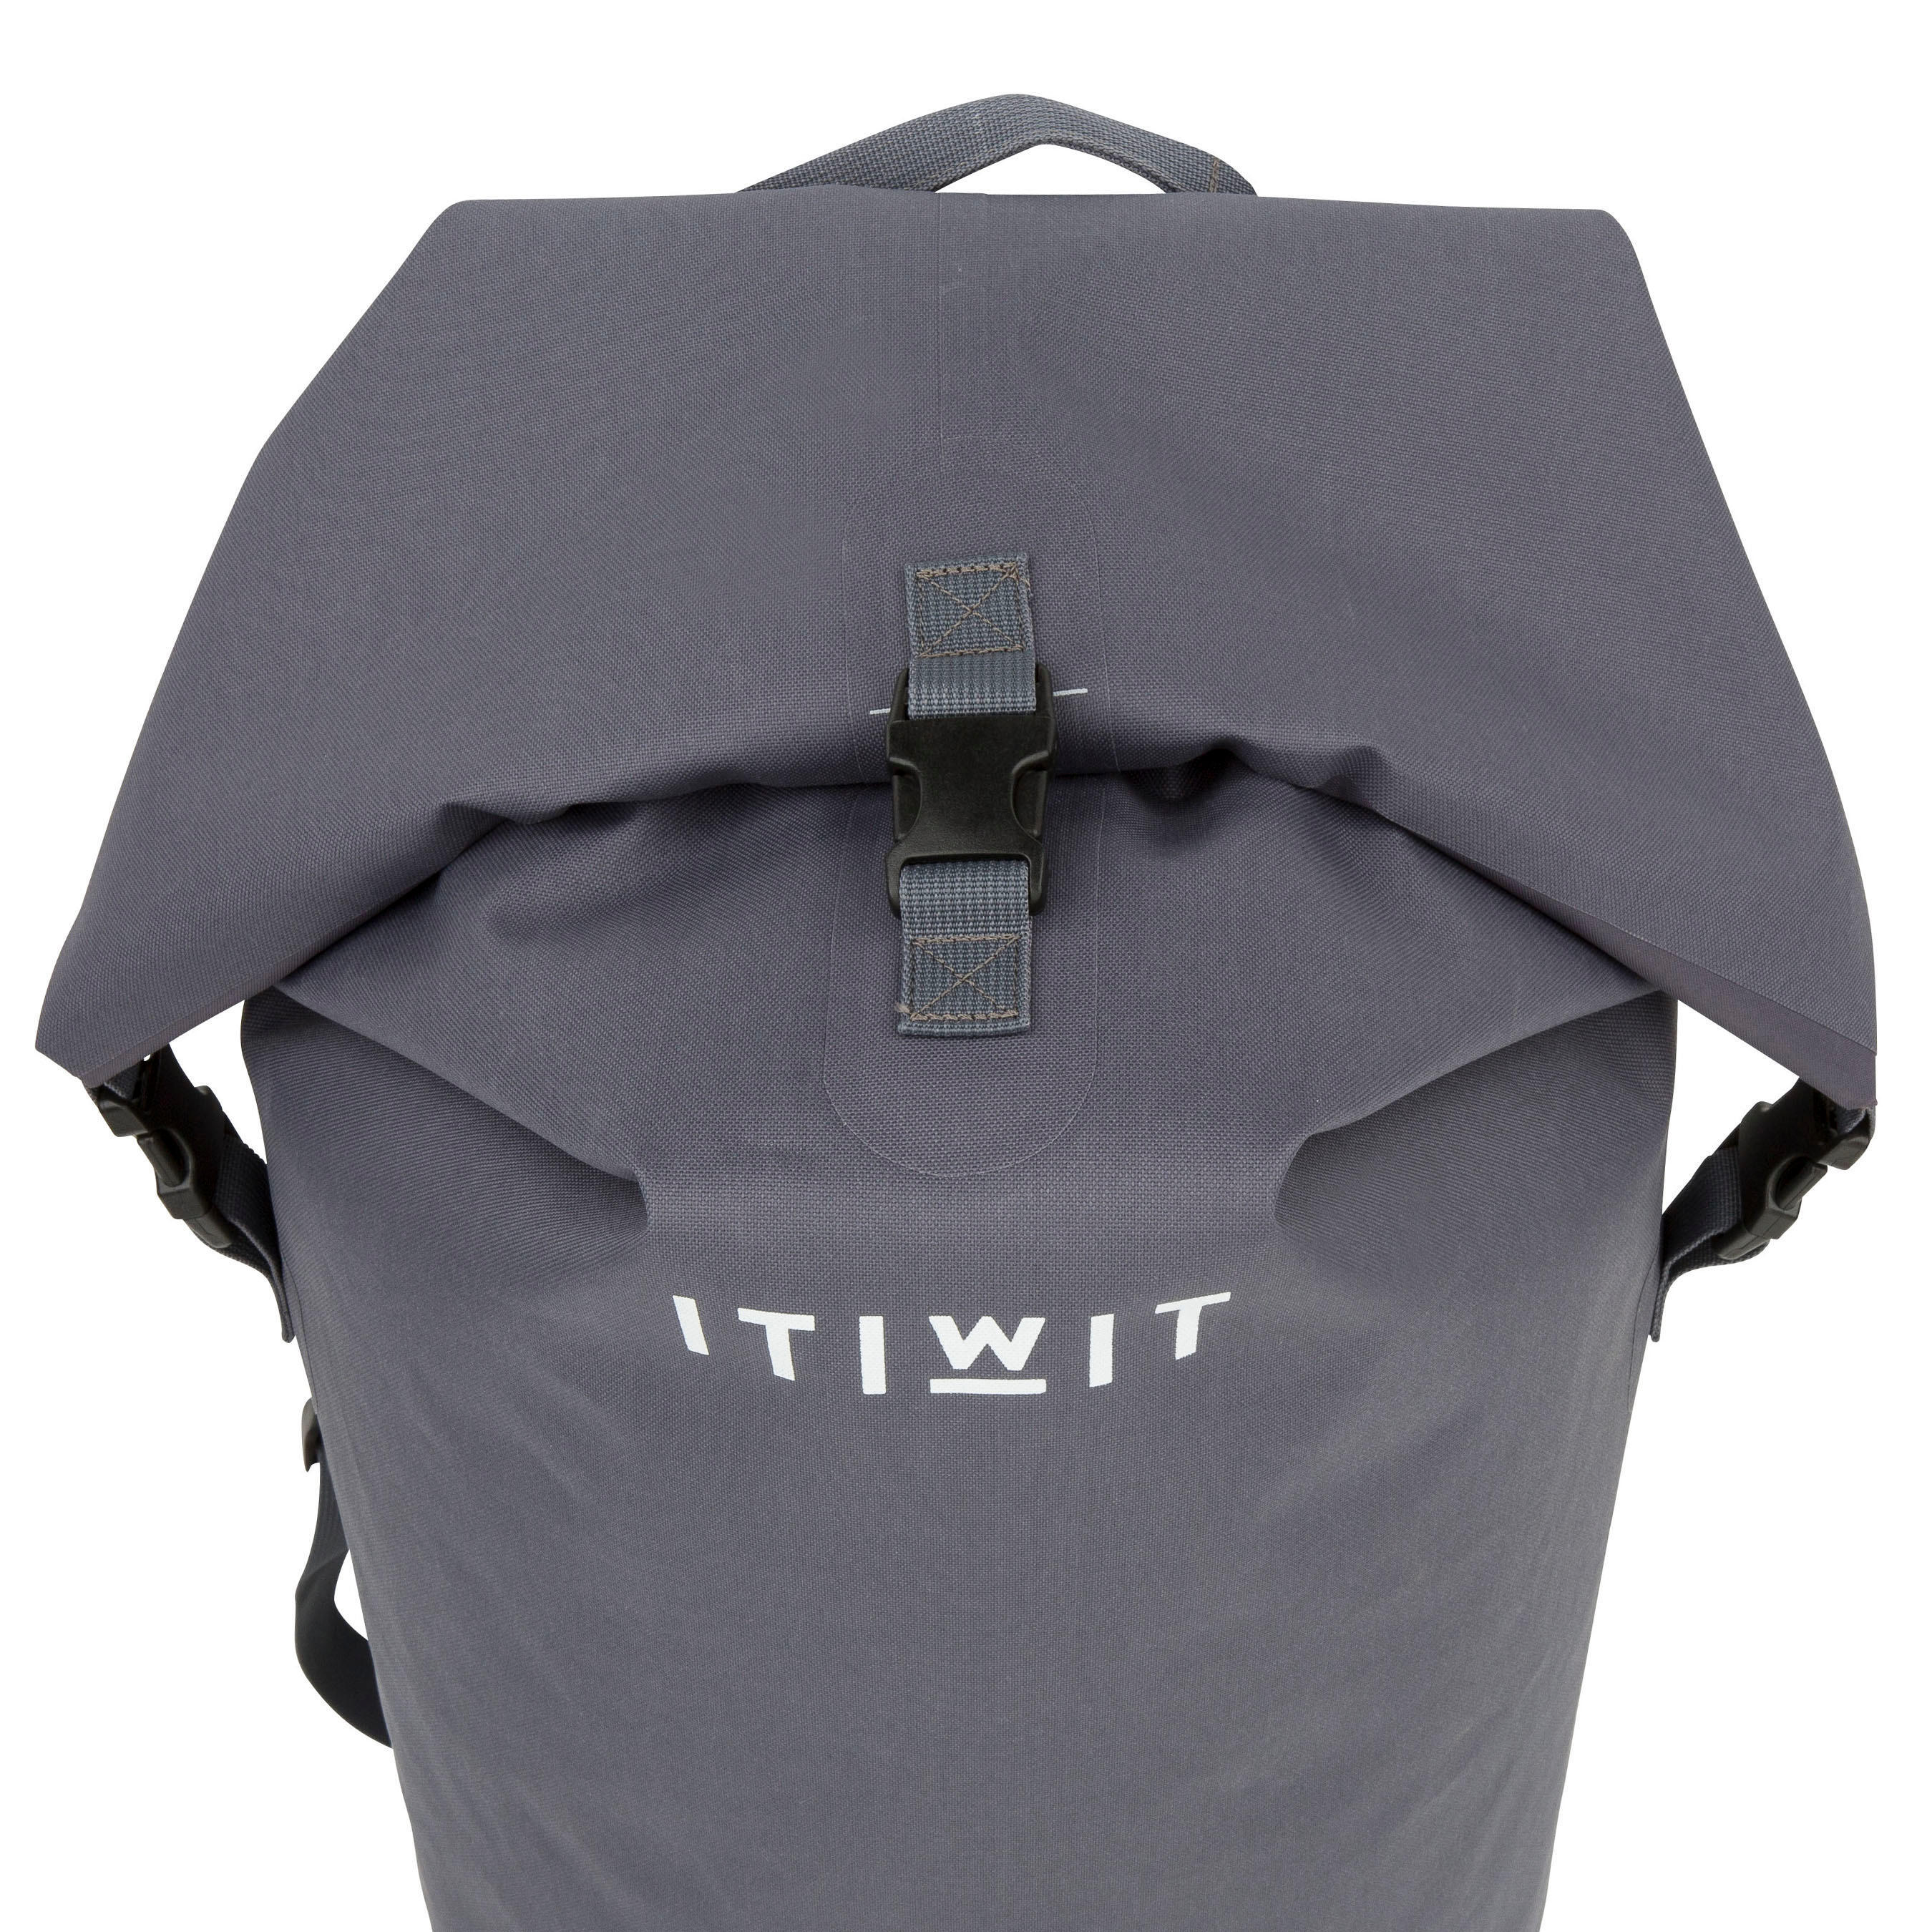 Waterproof Bag 60 L IPX6, grey 10/11